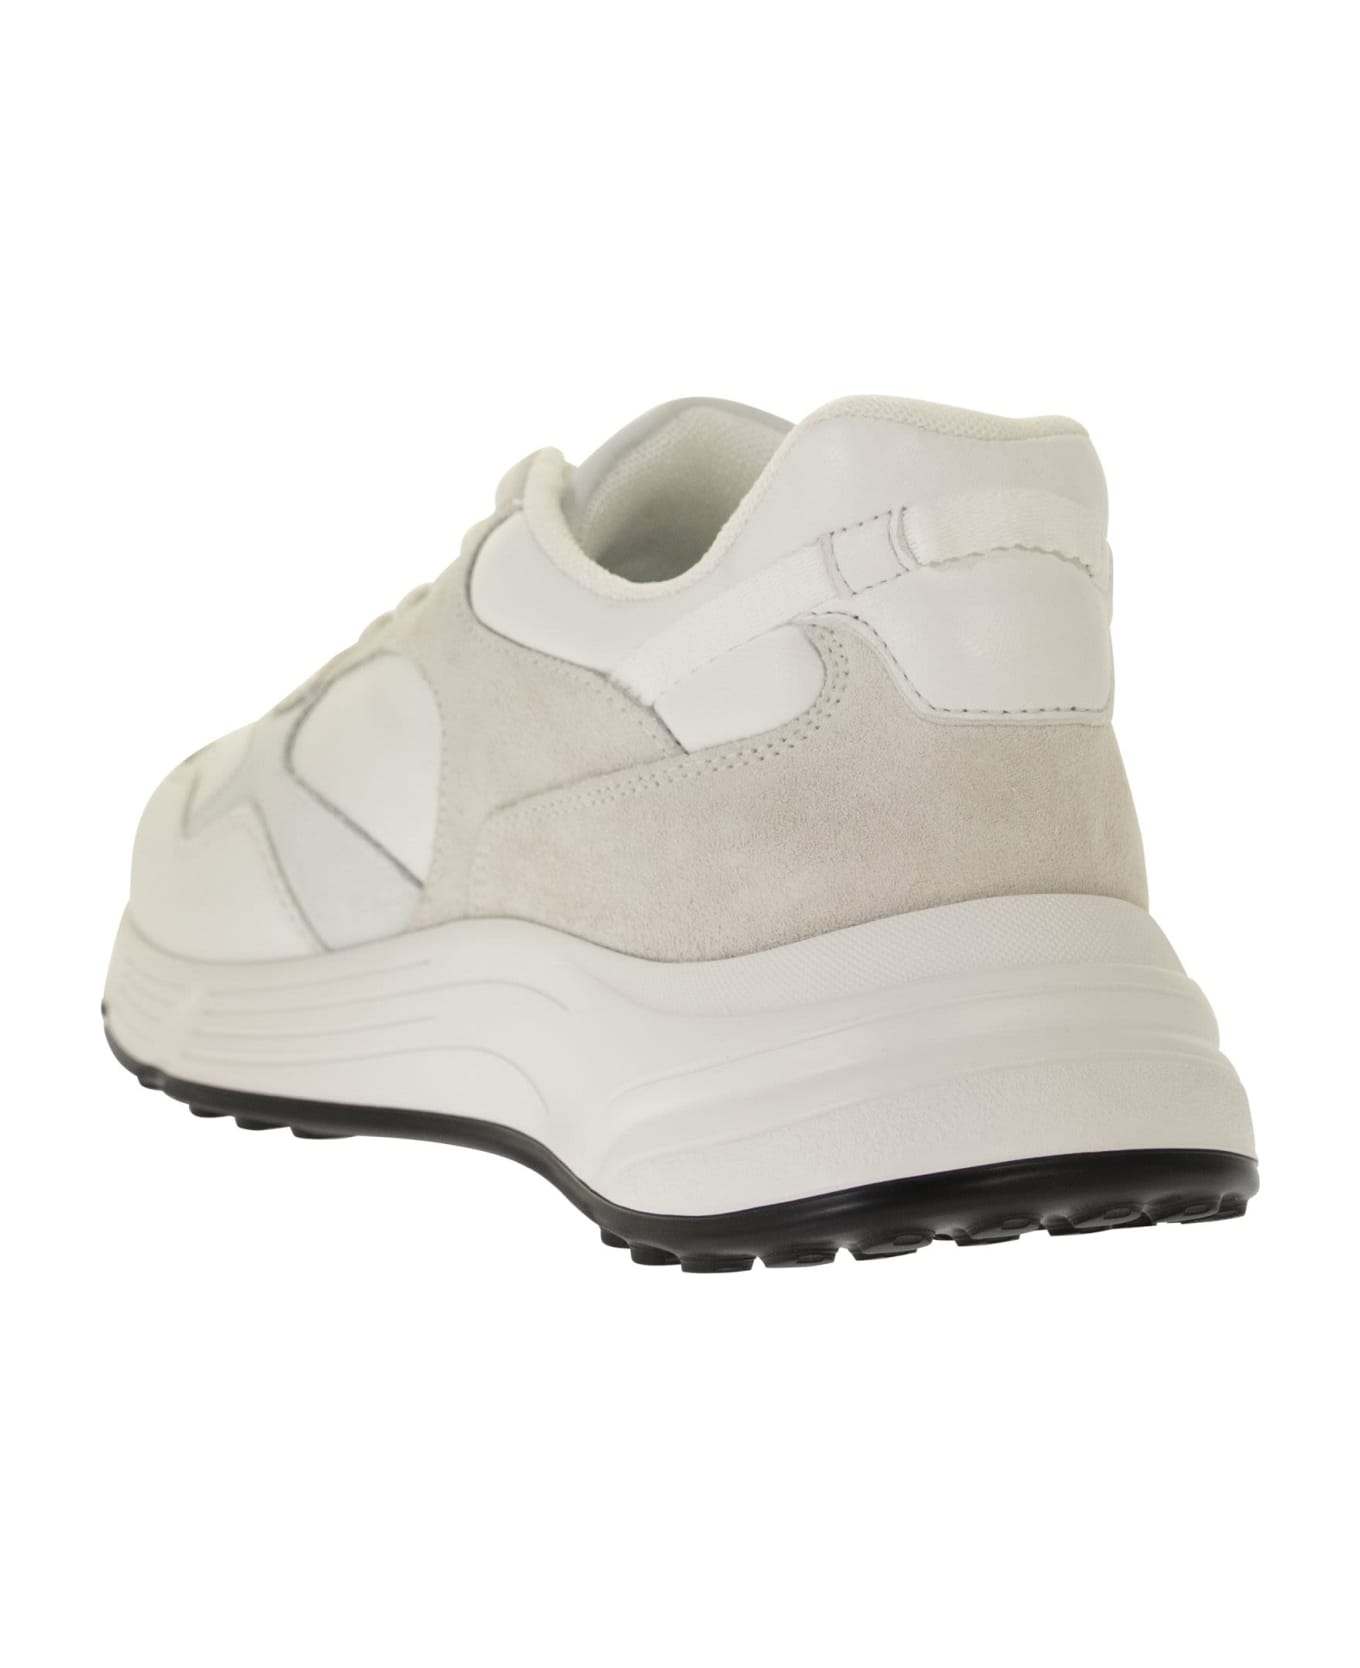 Hogan Hyperlight Sneakers - White